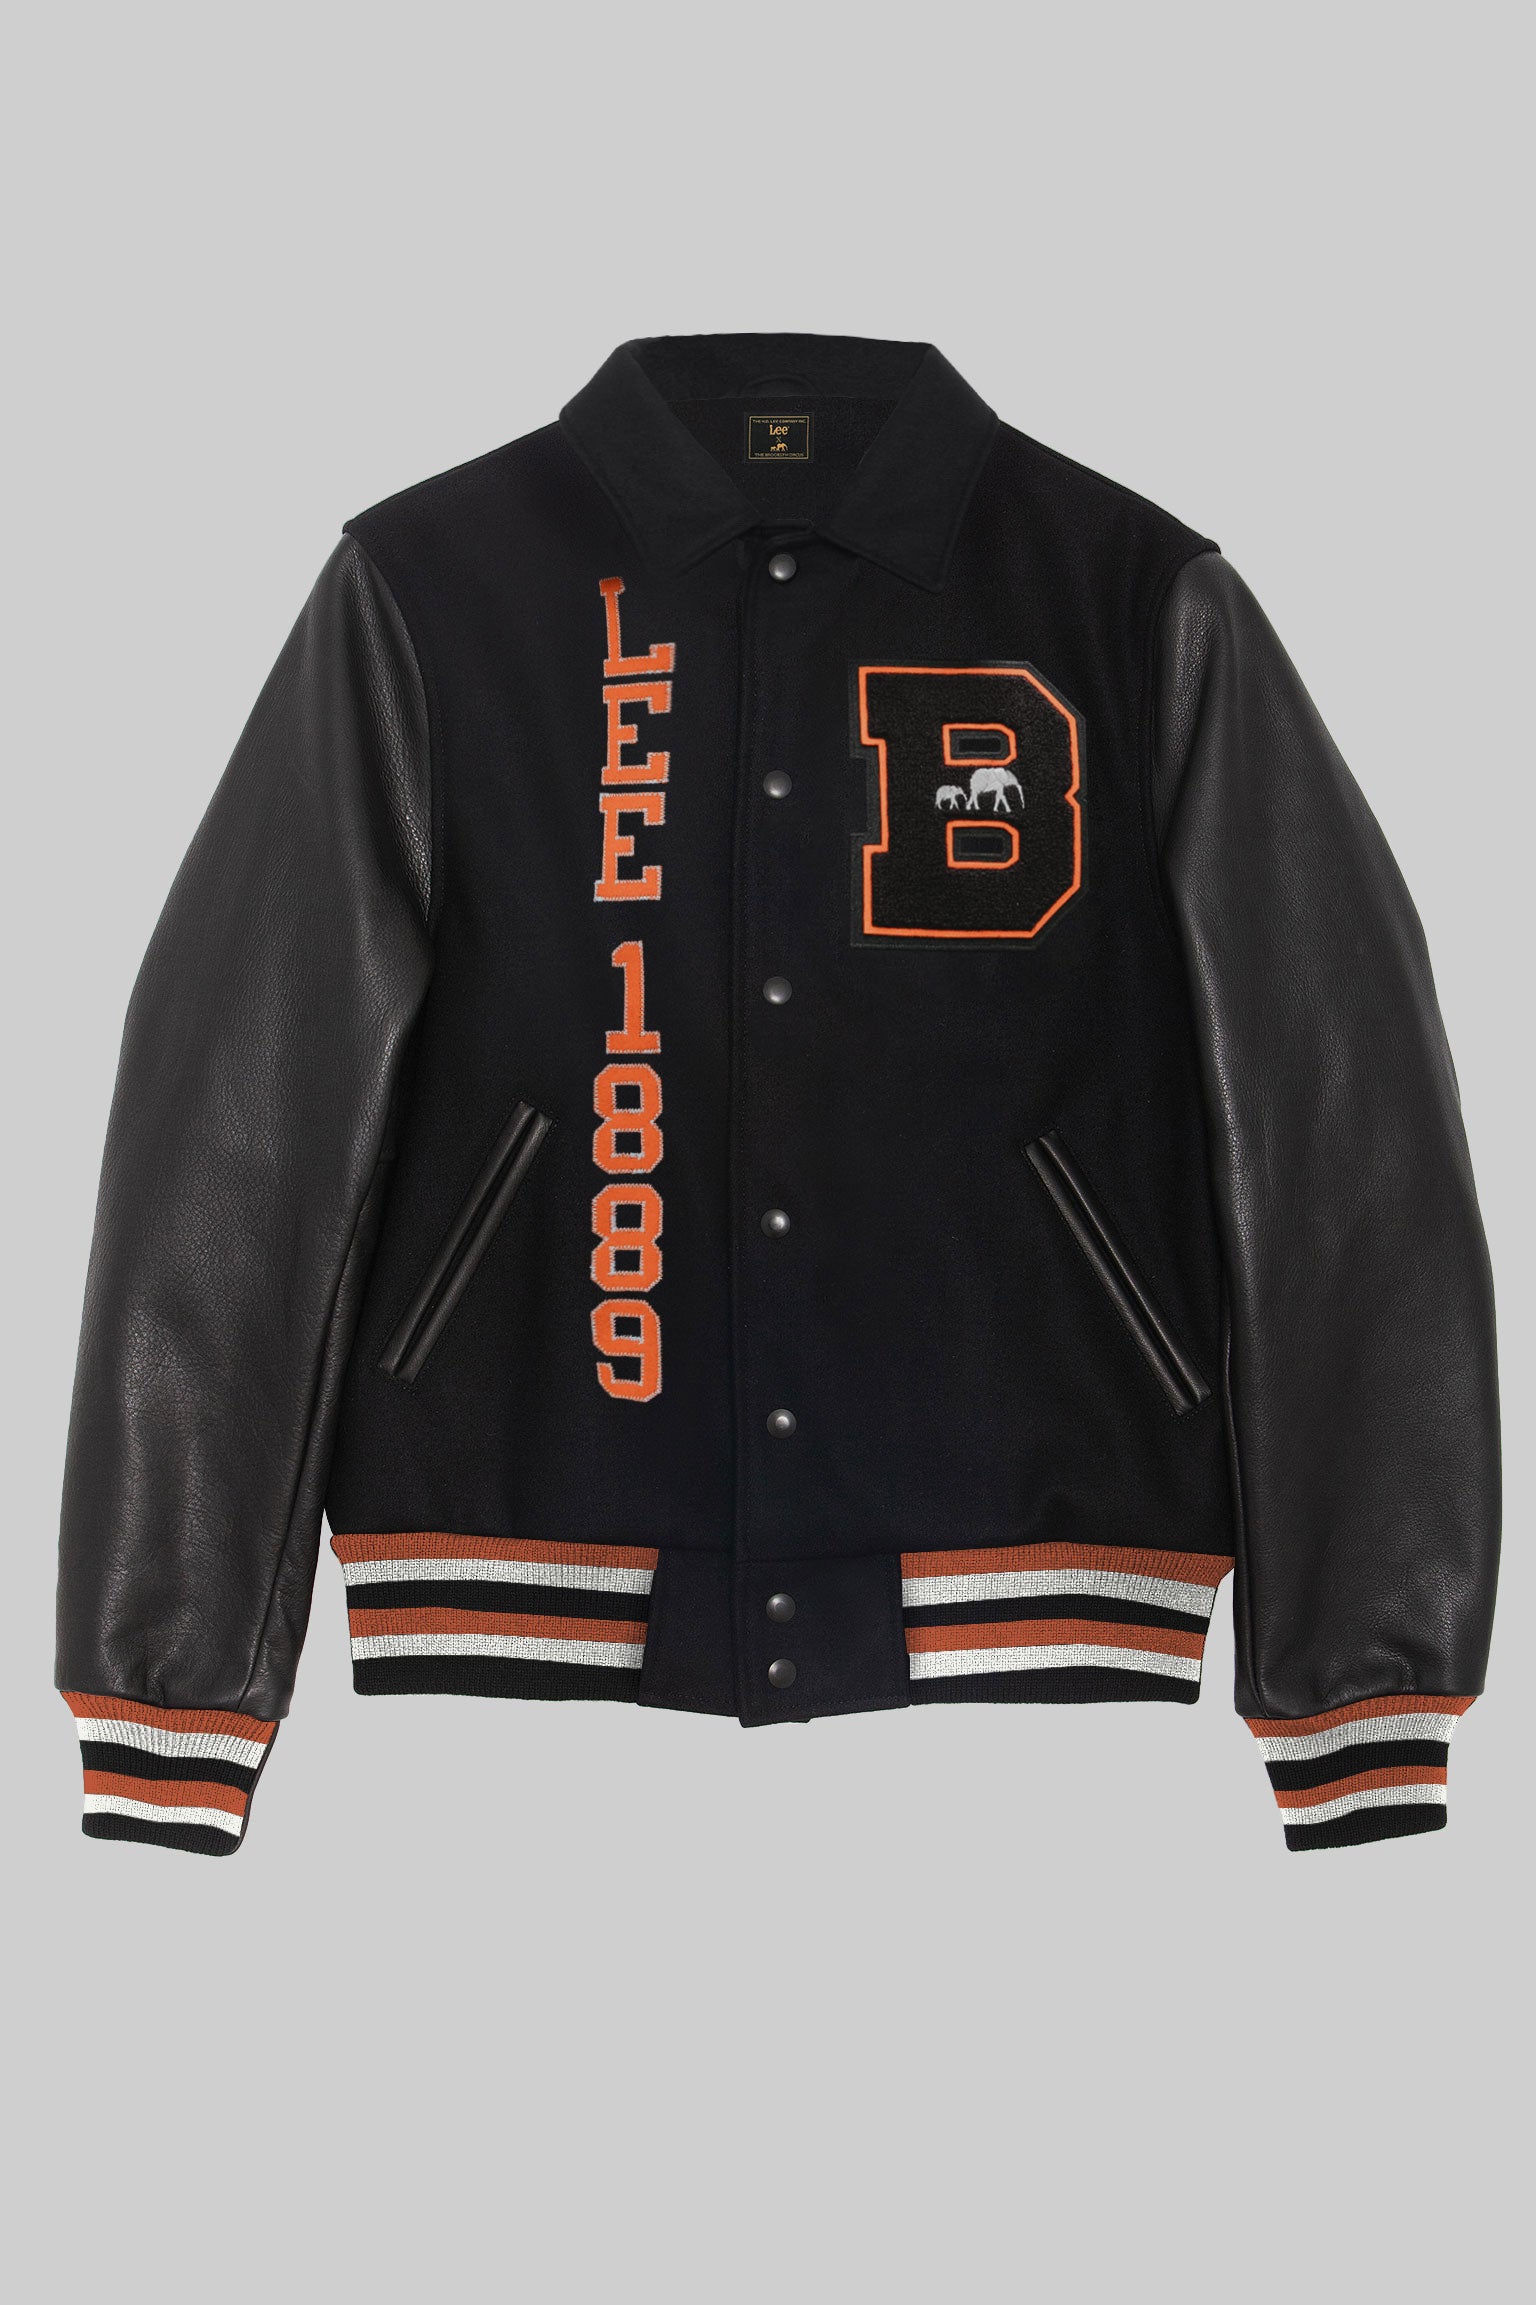 Lee x BKc Varsity Jacket